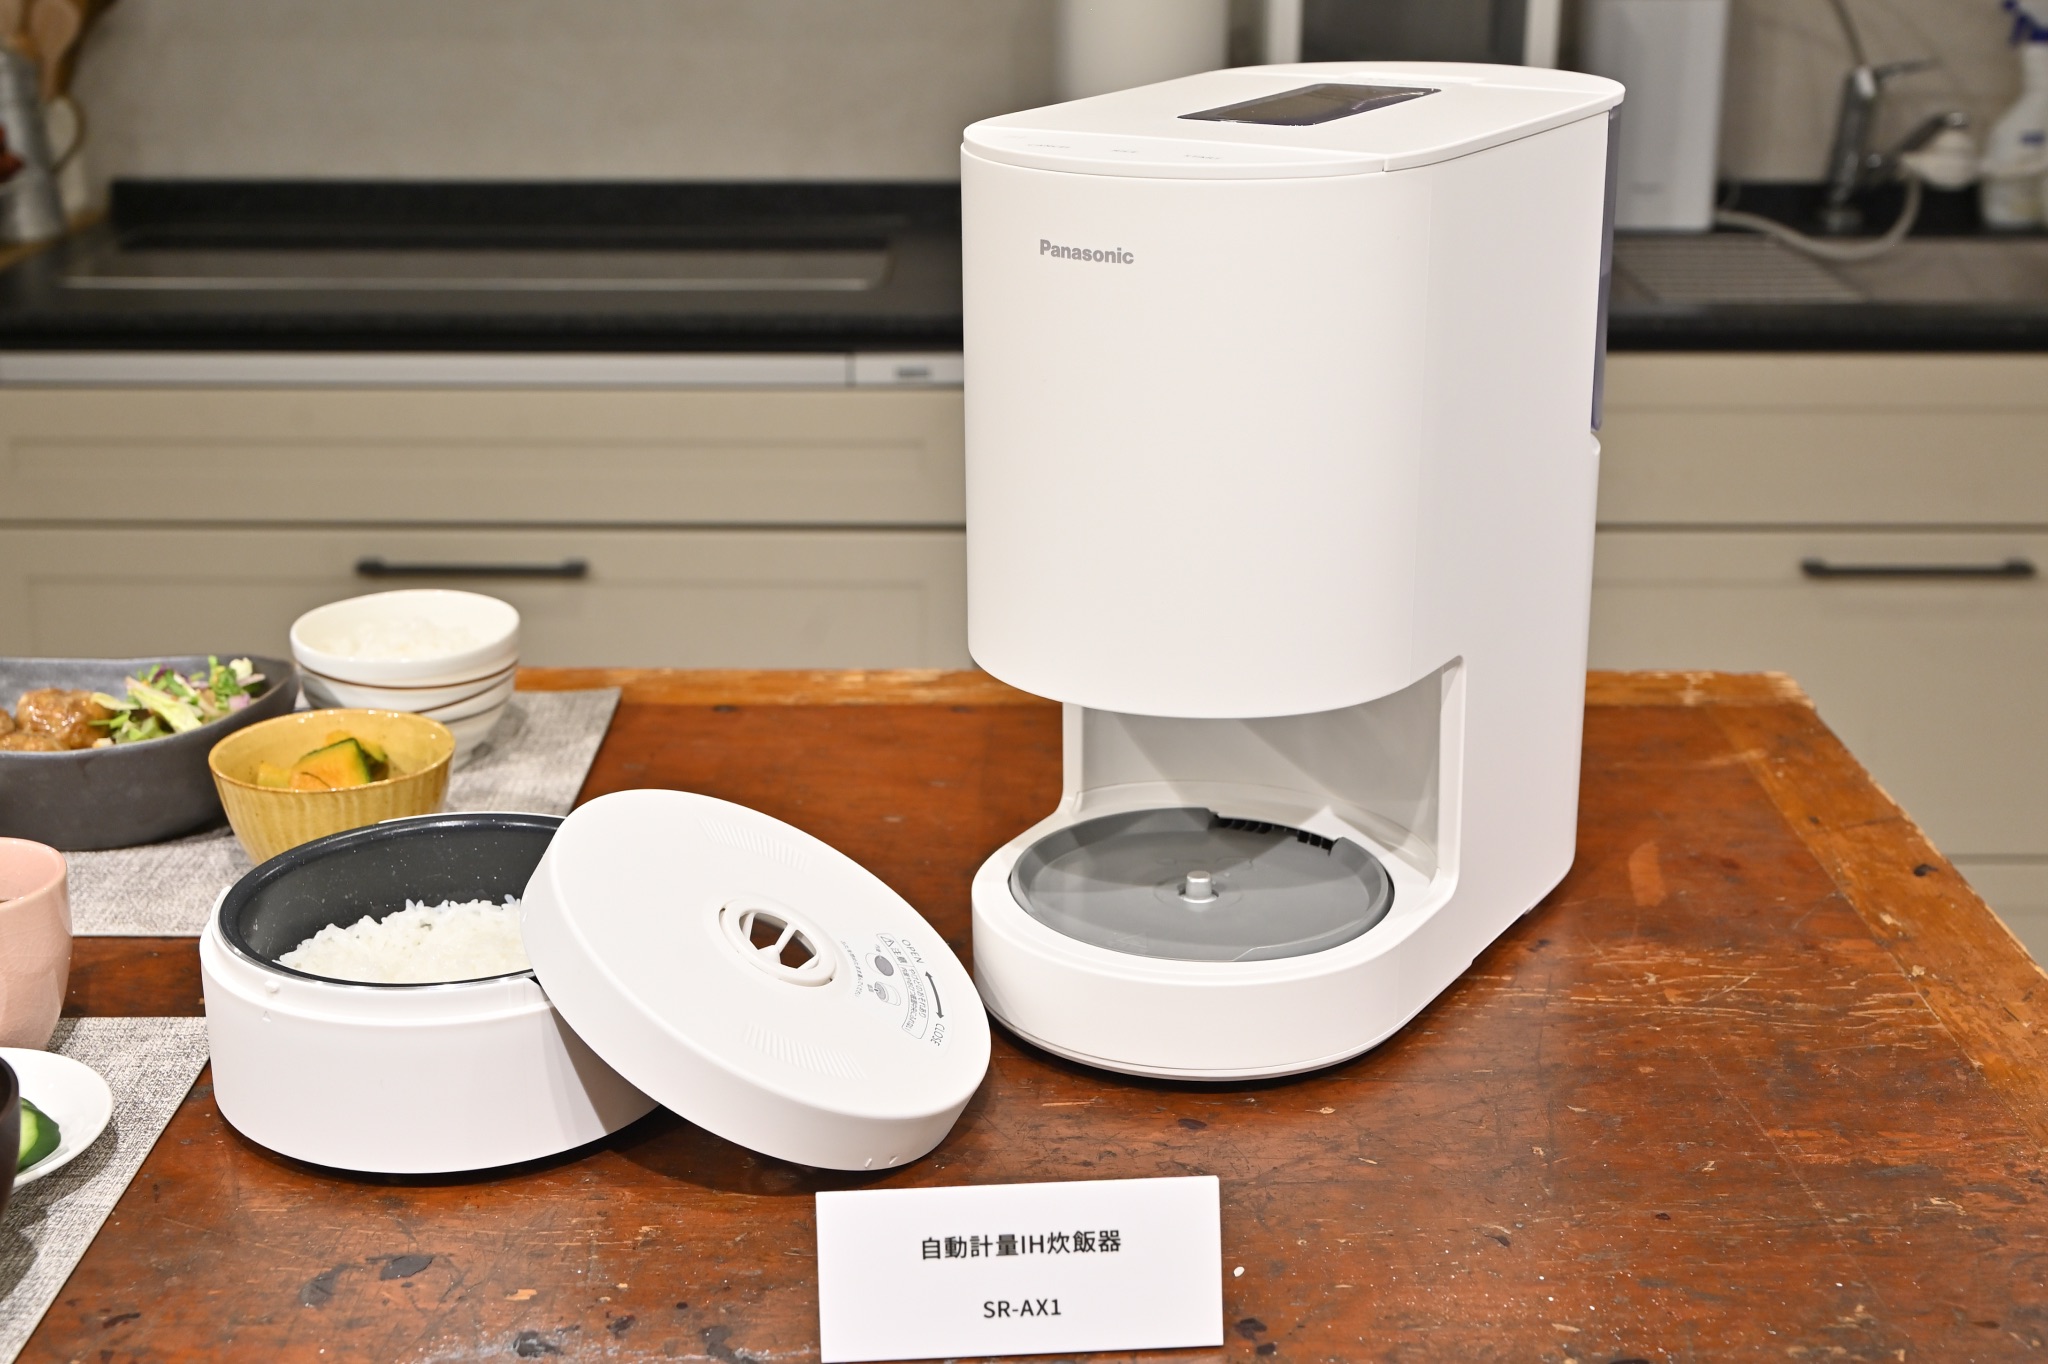 【新品・未使用】パナソニック 自動軽量炊飯器 白(SR-AX1-W)3万3千円ではどうでしょうか